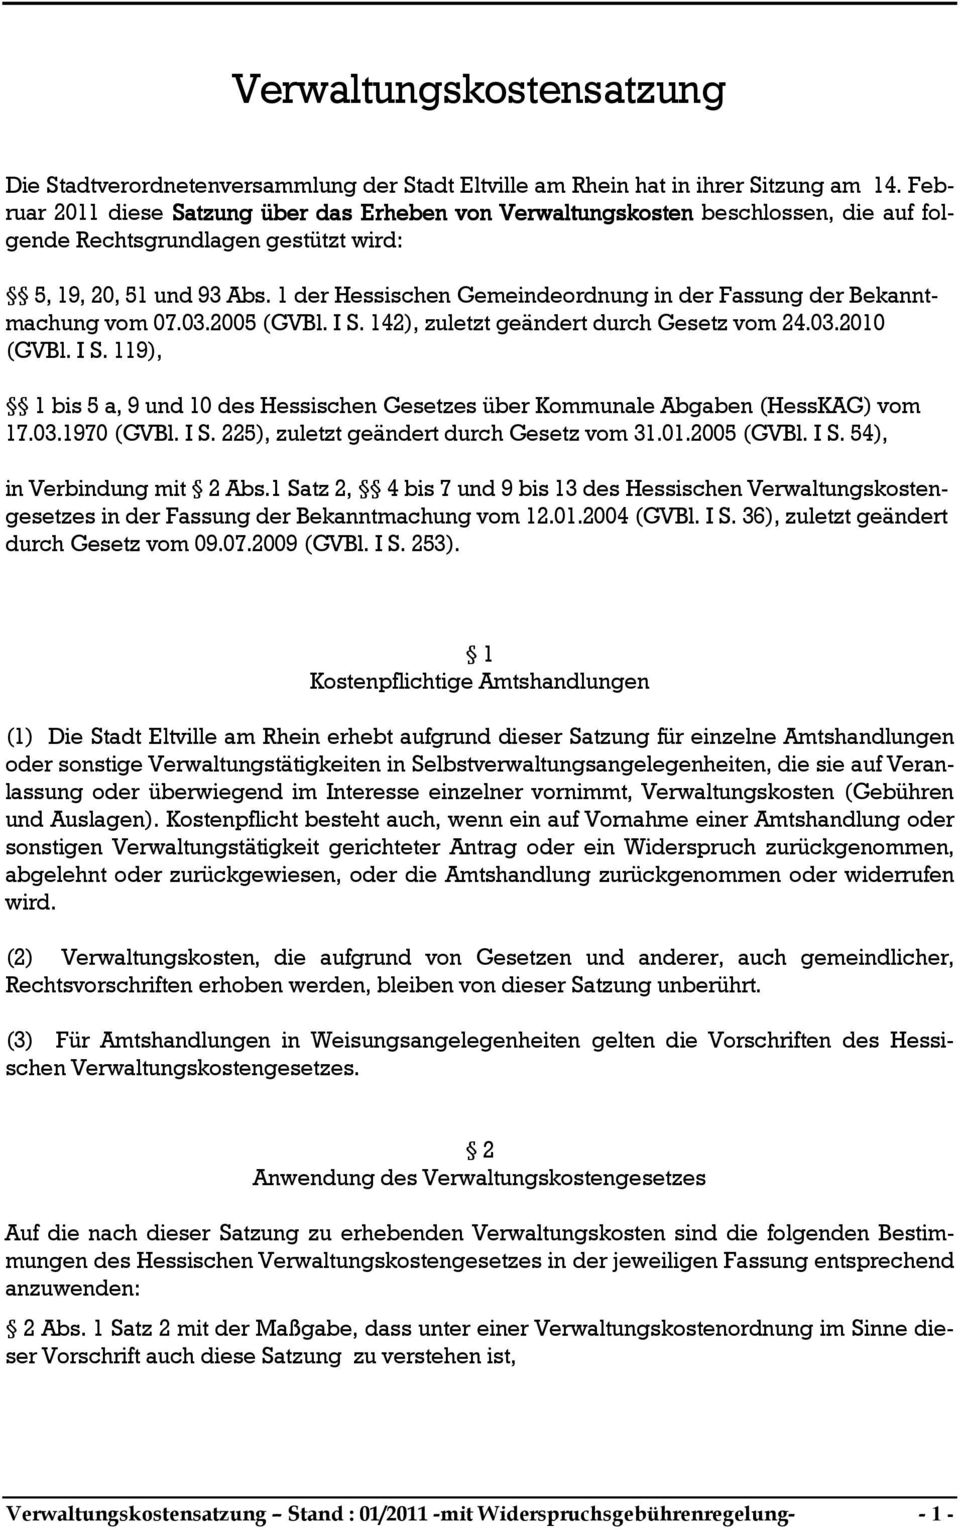 1 der Hessischen Gemeindeordnung in der Fassung der Bekanntmachung vom 07.03.2005 (GVBl. I S. 142), zuletzt geändert durch Gesetz vom 24.03.2010 (GVBl. I S. 119), 1 bis 5 a, 9 und 10 des Hessischen Gesetzes über Kommunale Abgaben (HessKAG) vom 17.